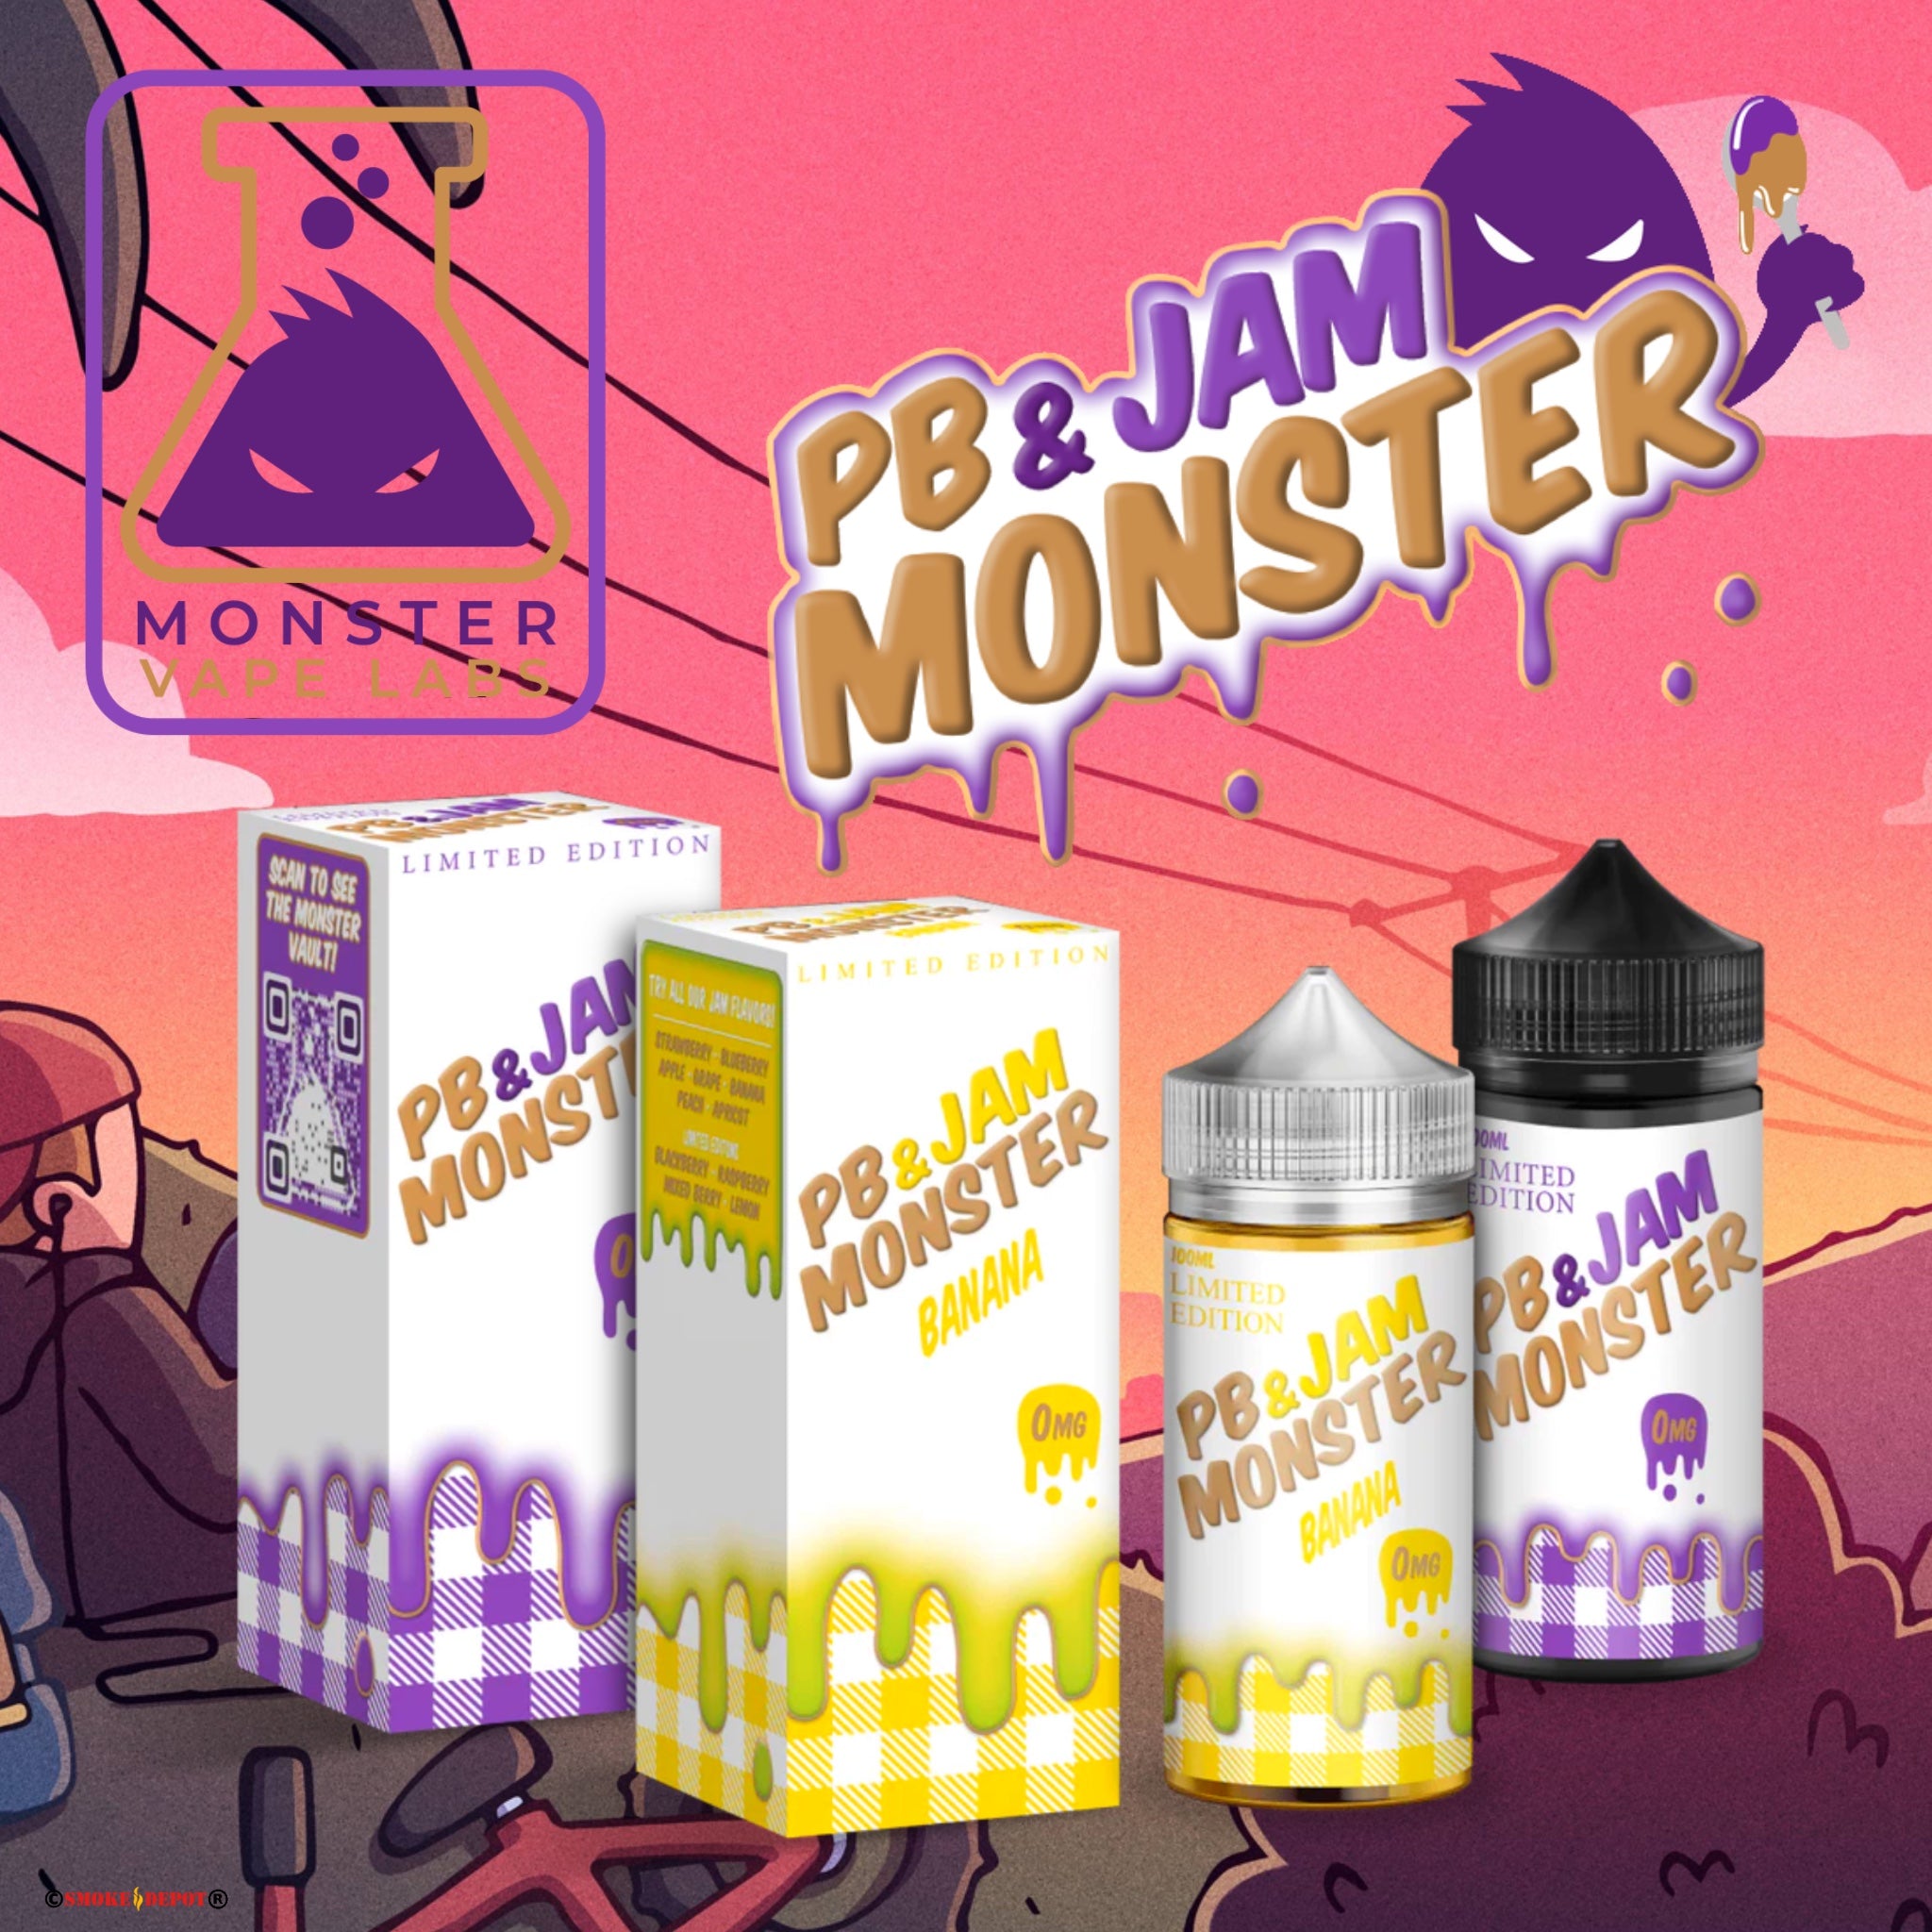 MONSTER PB & Jam Monster E-Liquids